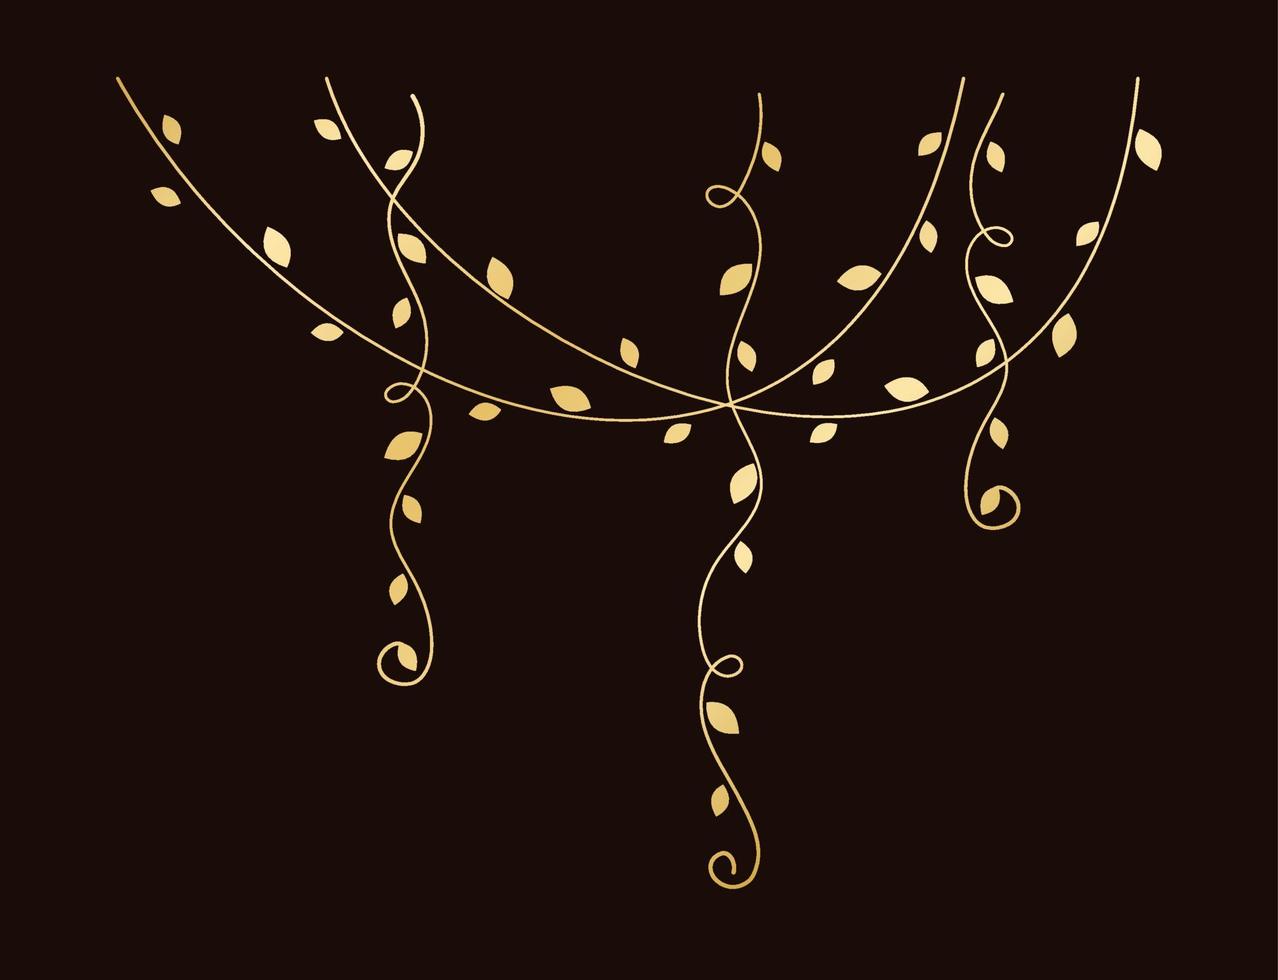 Gold hanging vines vector illustration. Golden floral botanical vine curtain design element